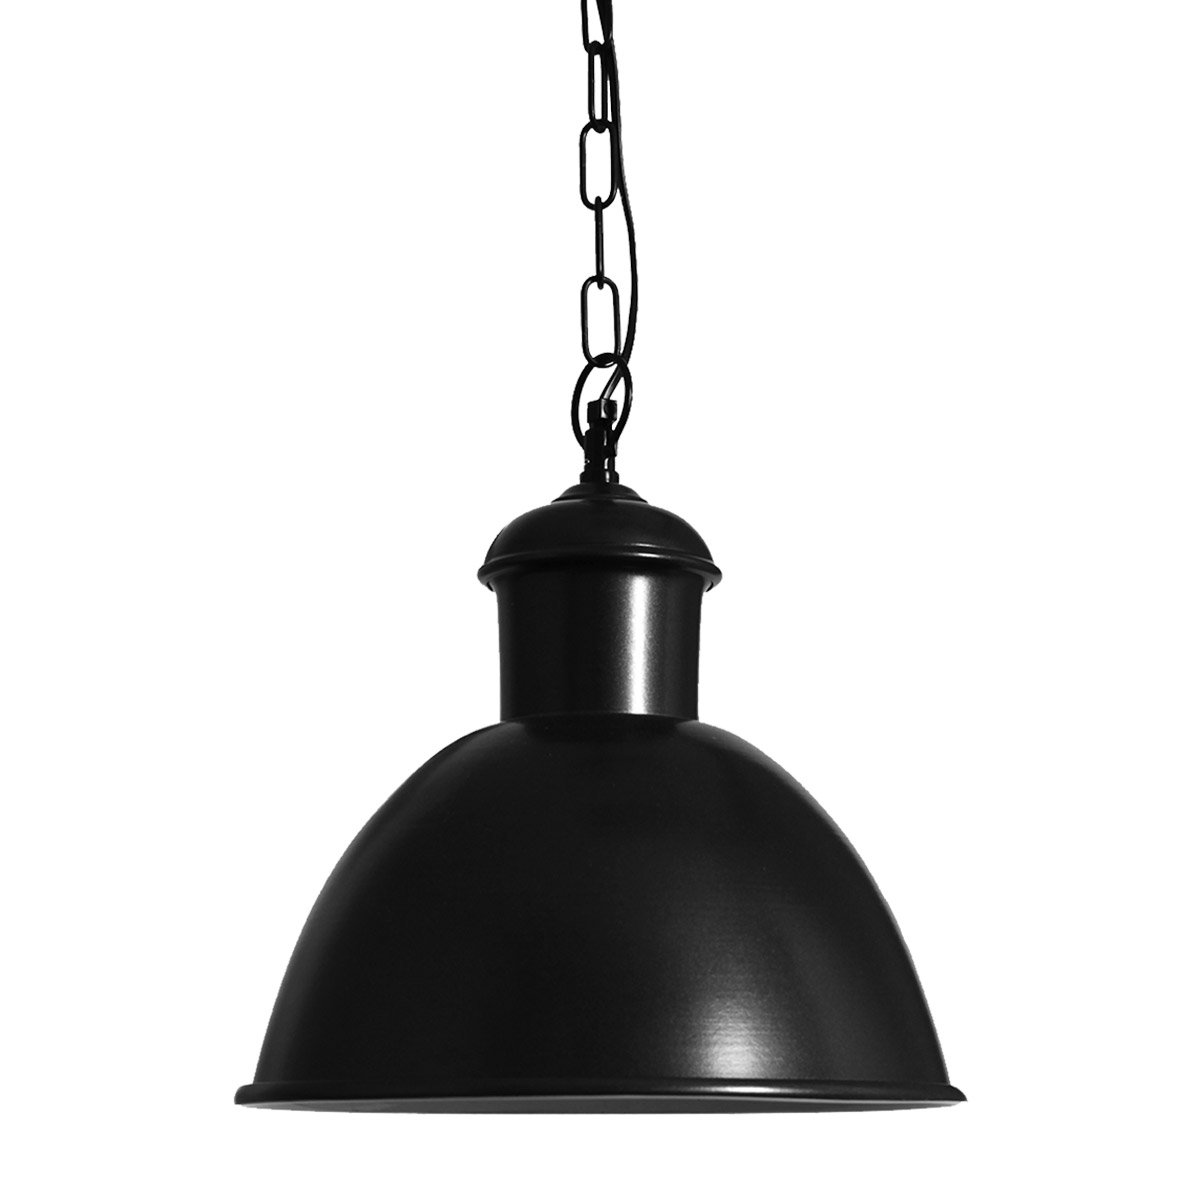 Lampe suspendue sur chaîne NDSM (6520) Anthracite -  Industriel & Vintage | Nostalux.fr